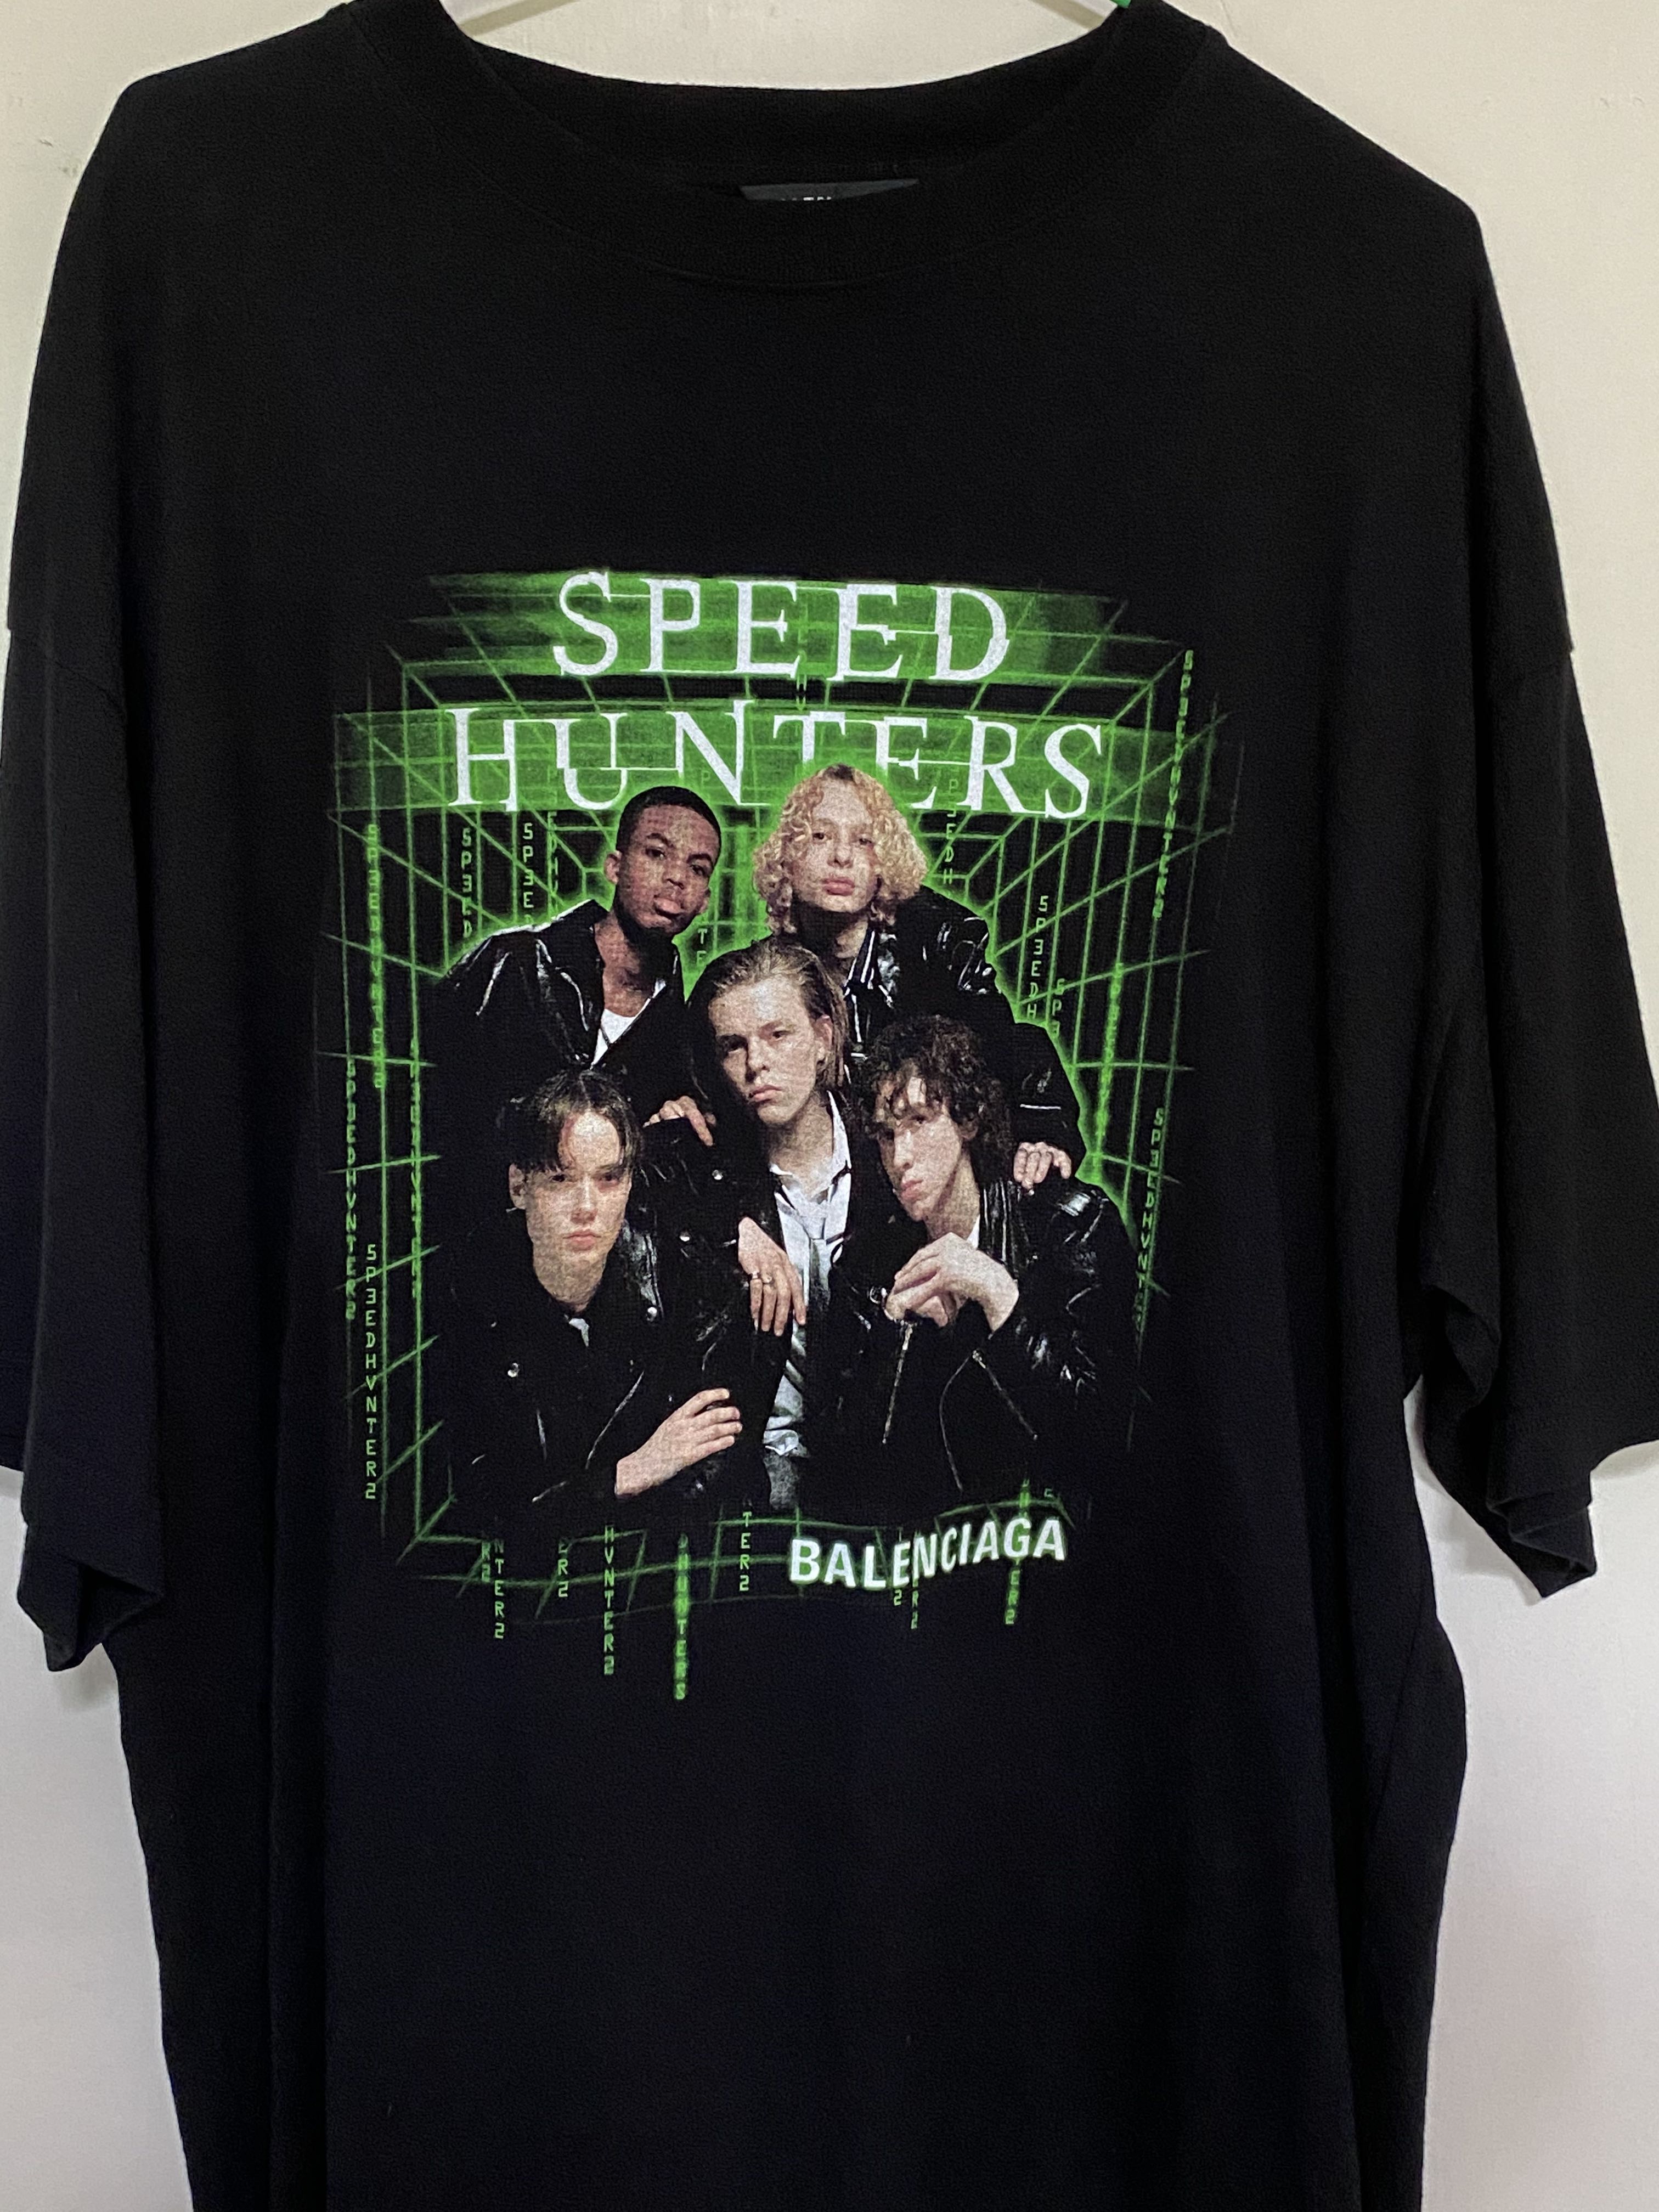 Cập nhật với hơn 52 về balenciaga speedhunters t shirt hay nhất   cdgdbentreeduvn